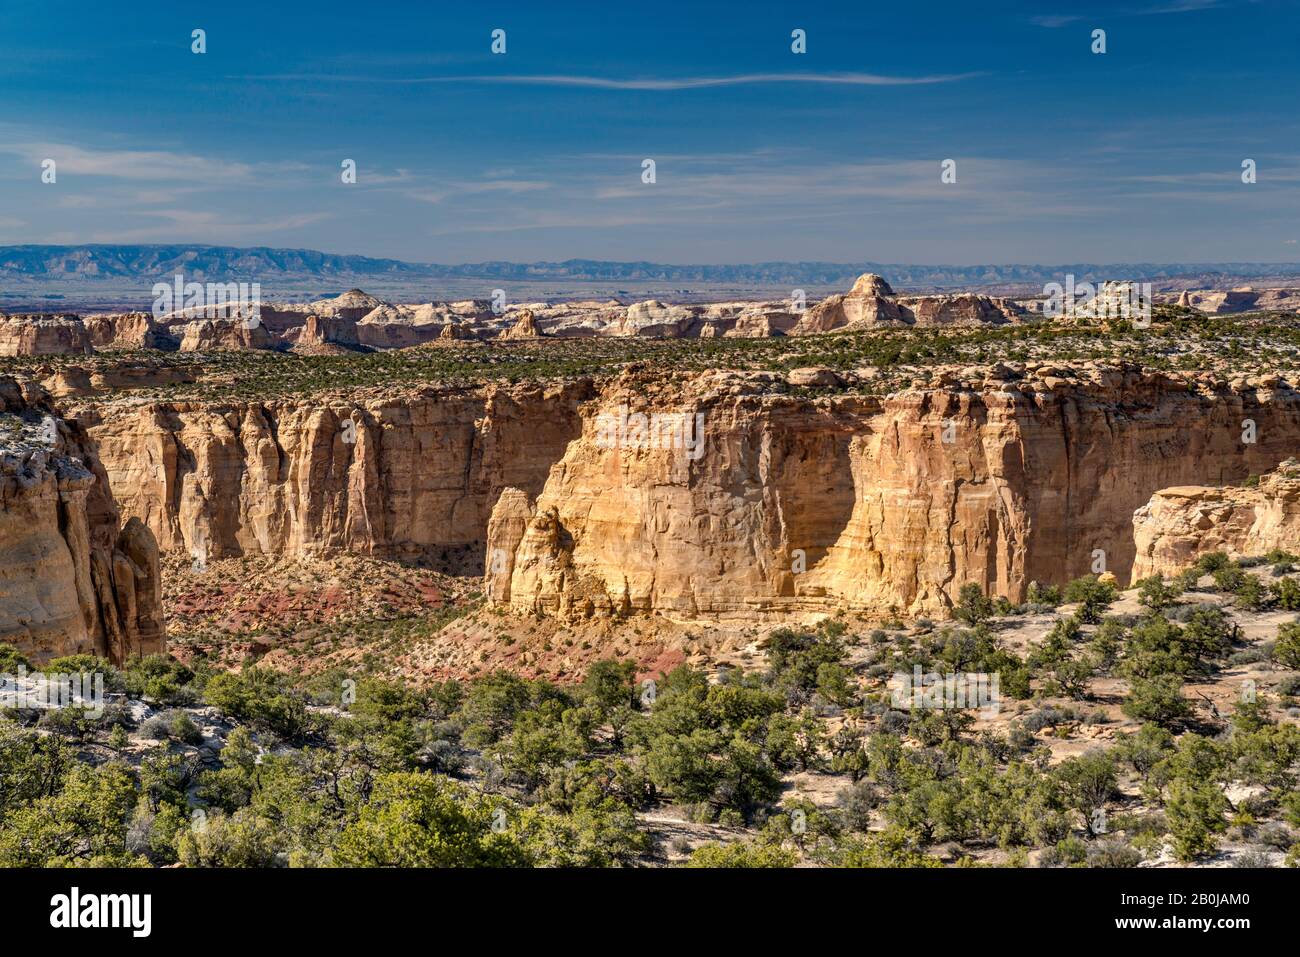 Canyon e mesoni in arenaria Navajo nell'area di Horseshoe Bend, punto panoramico di Ghost Rock sull'Interstate 70 Freeway, area di San Rafael Swell, Colorado Plateau, Utah, Stati Uniti Foto Stock